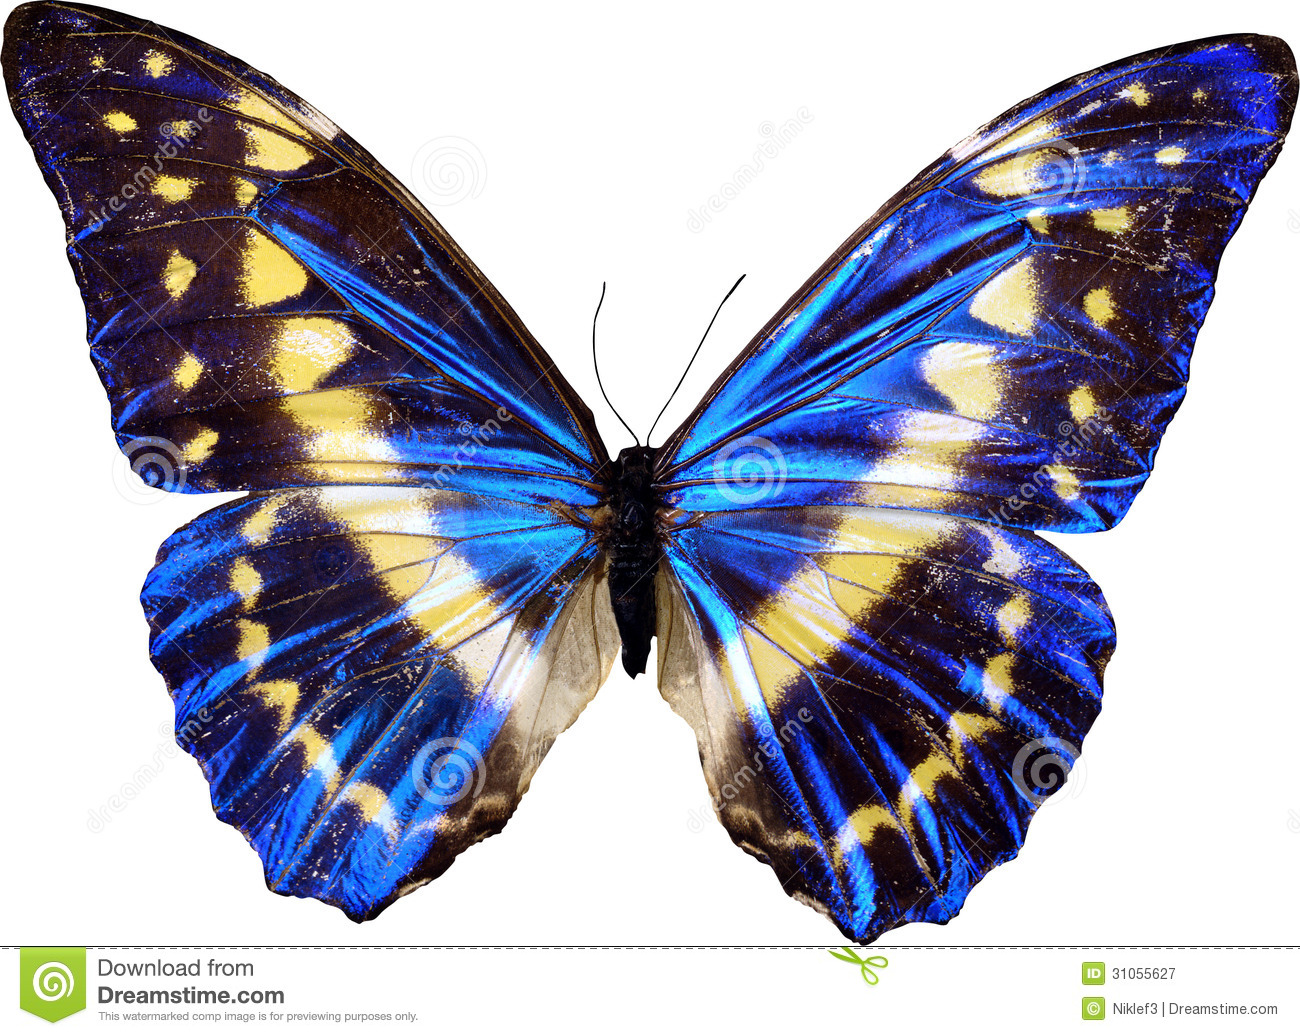 butterfly-01.jpg